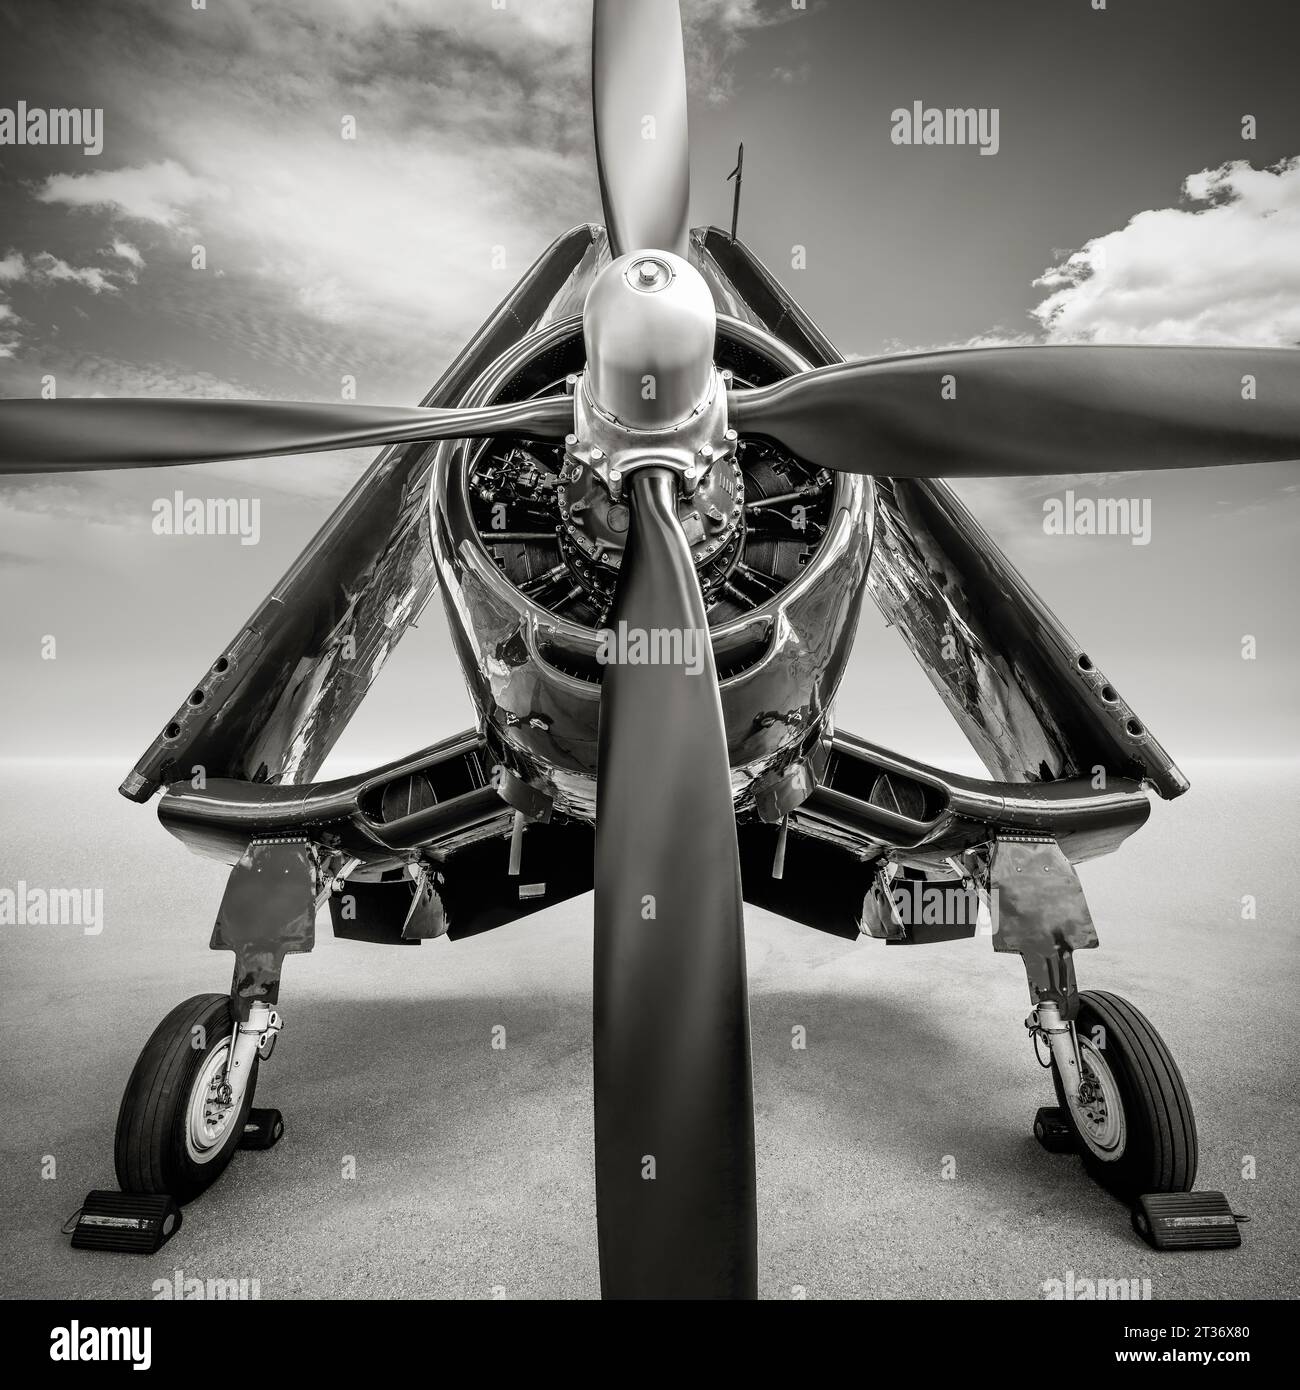 storico aereo da caccia su un campo d'aviazione Foto Stock